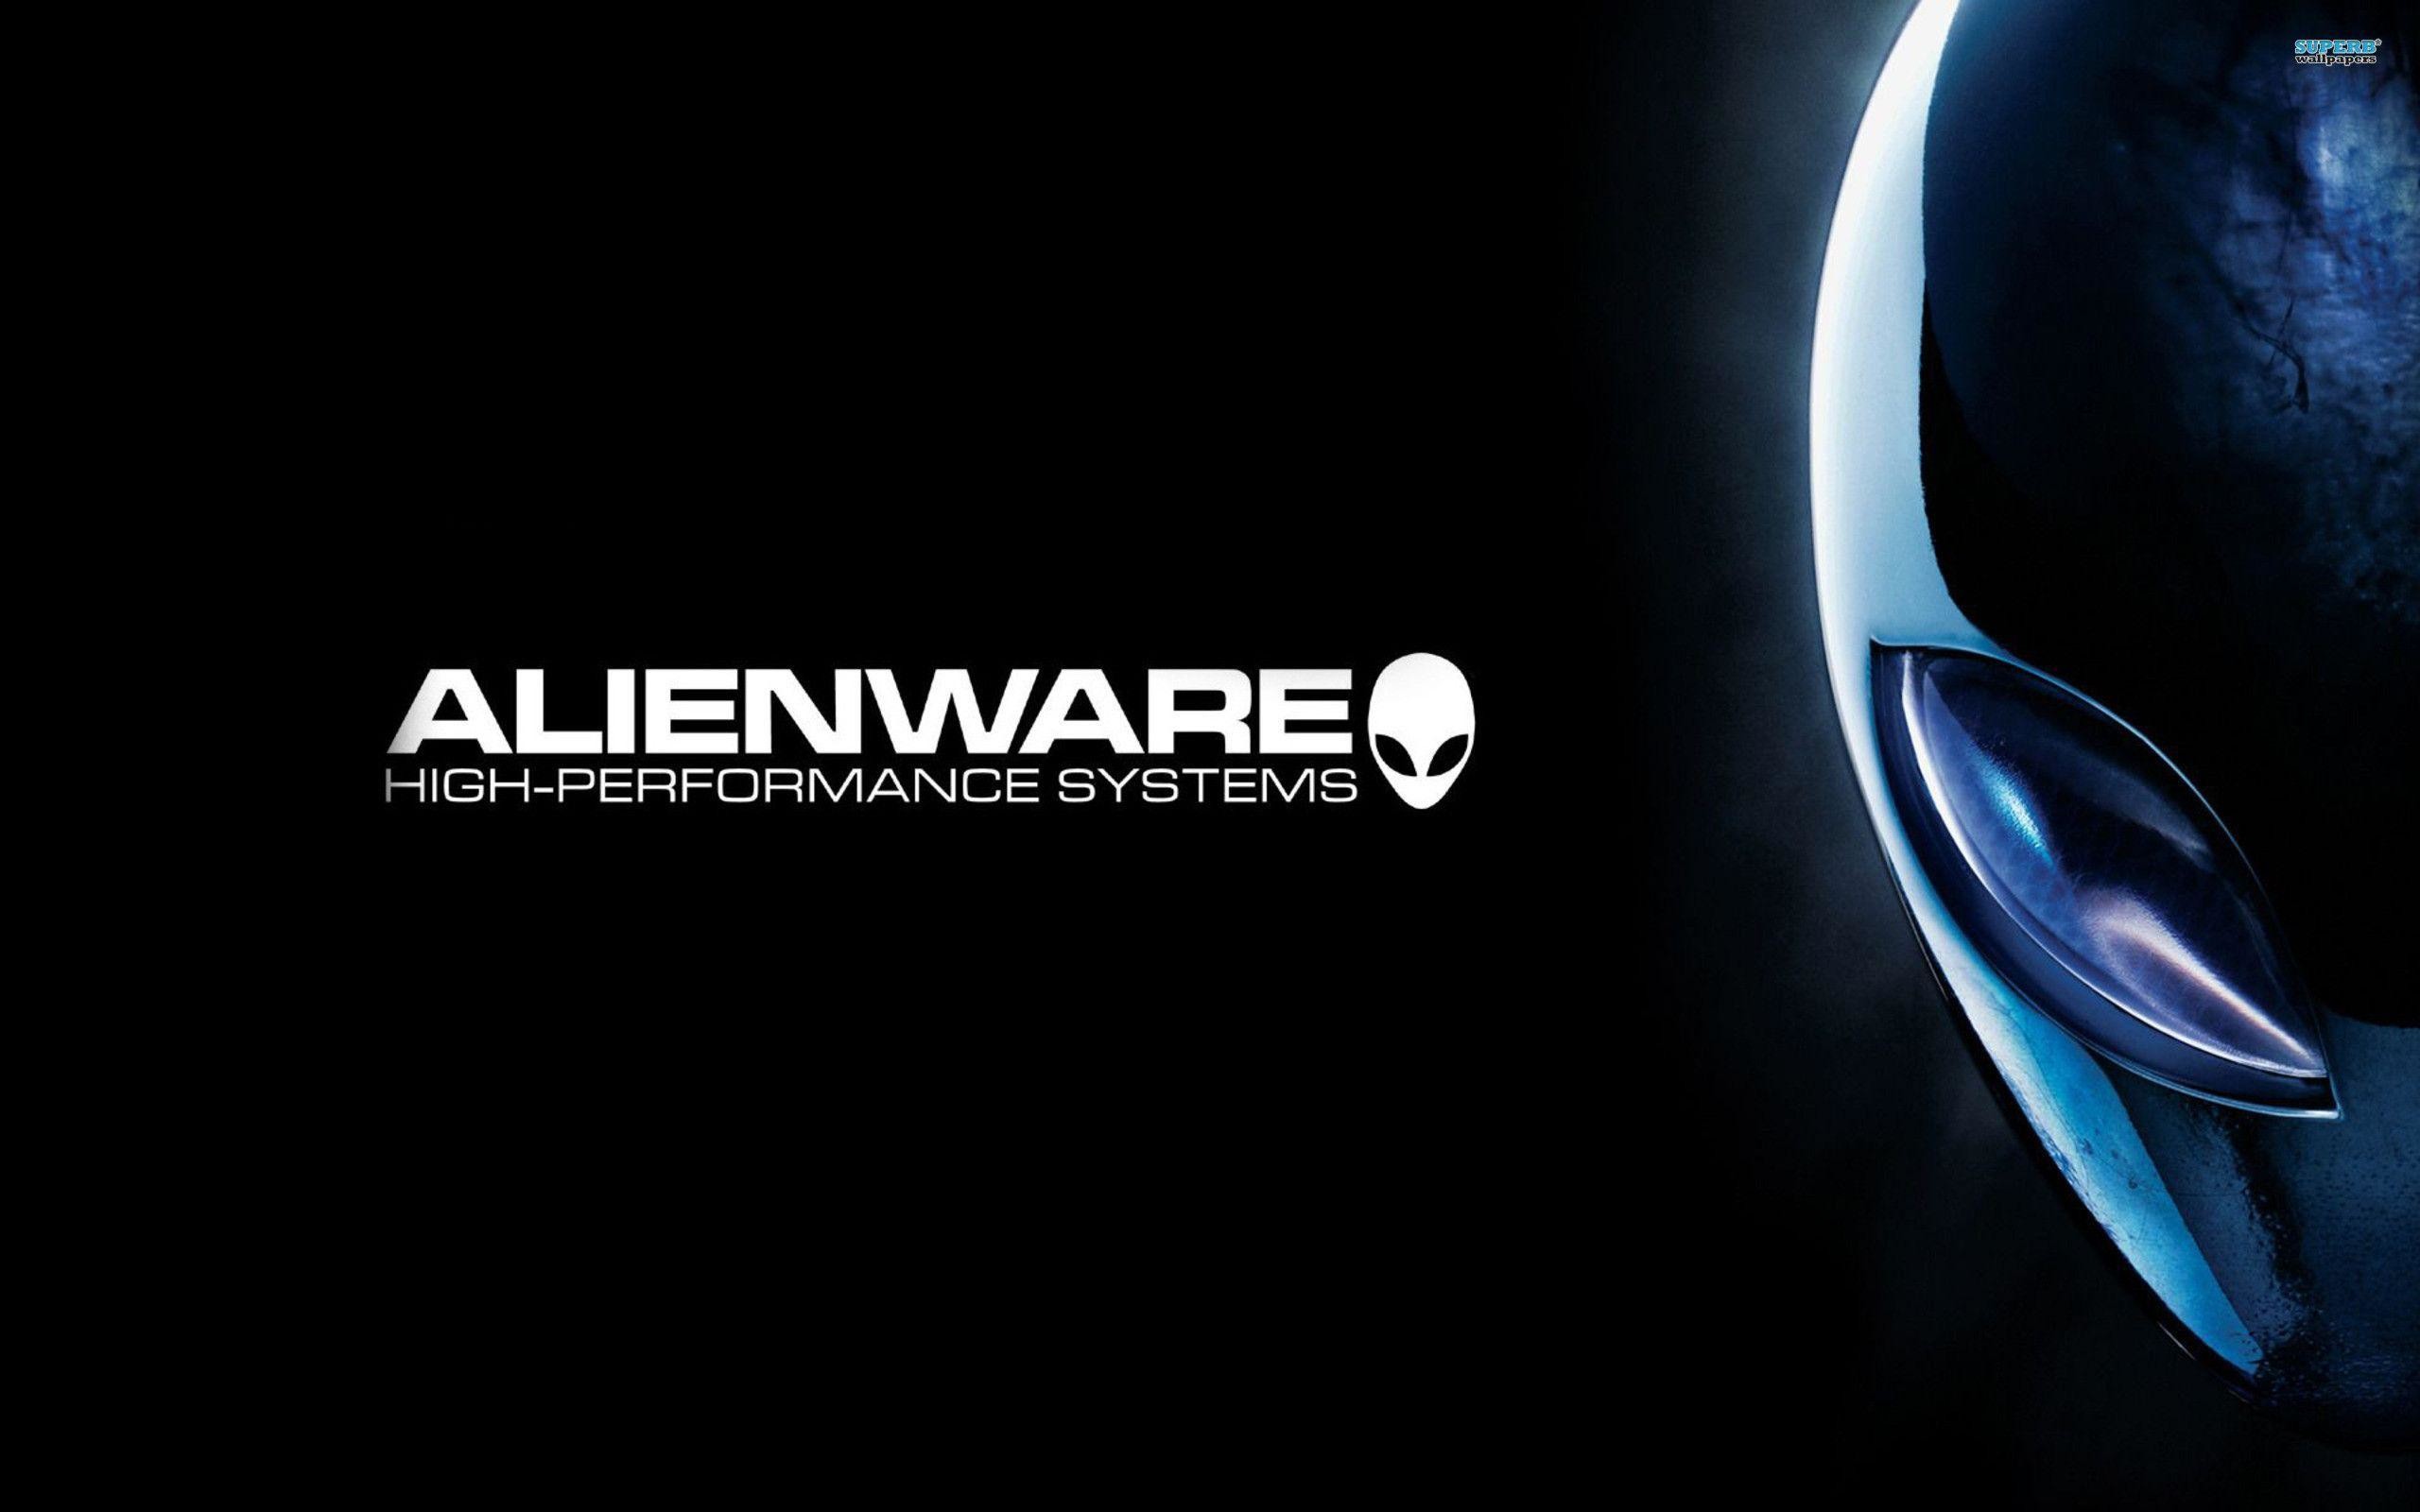 2560x1600 Alienware Wallpapers - Full HD wallpaper search